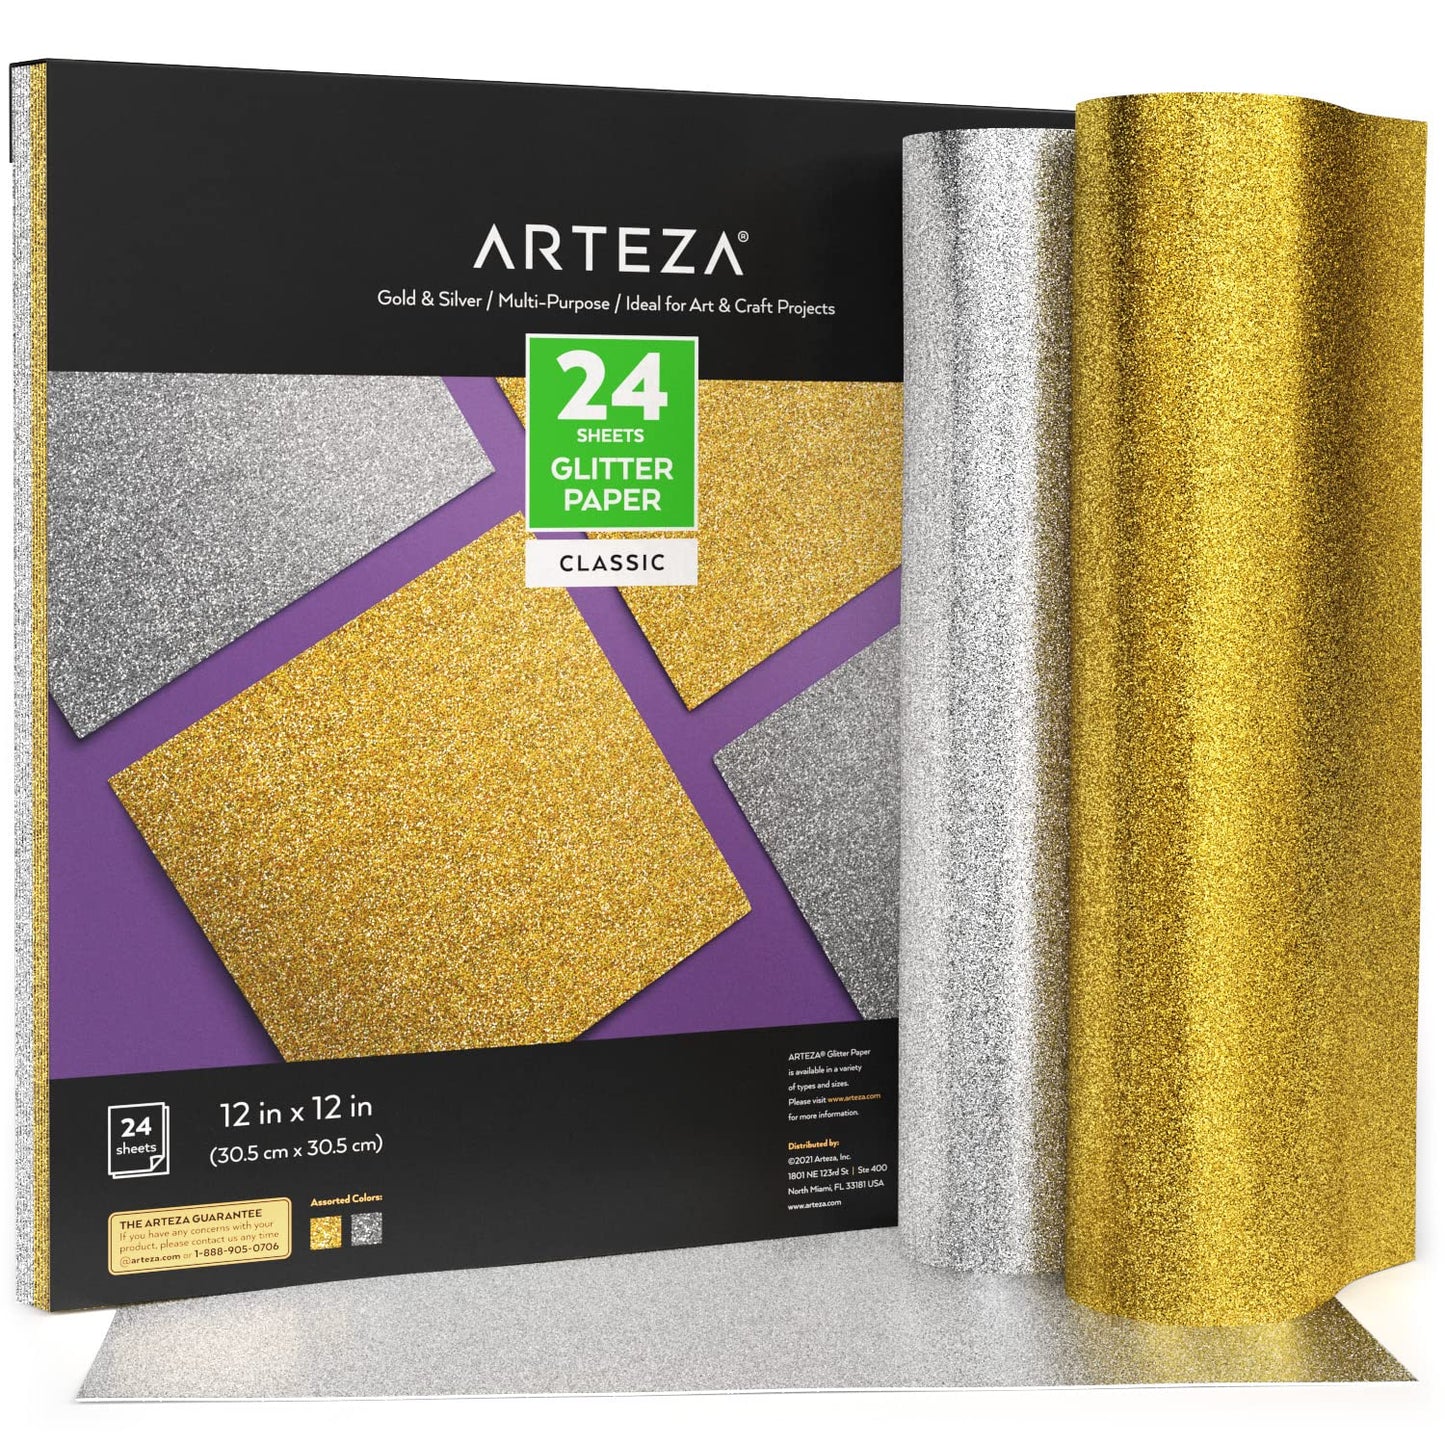 Arteza Glitter Paper, Gold & Silver, 12" x 12" - 24 Sheets